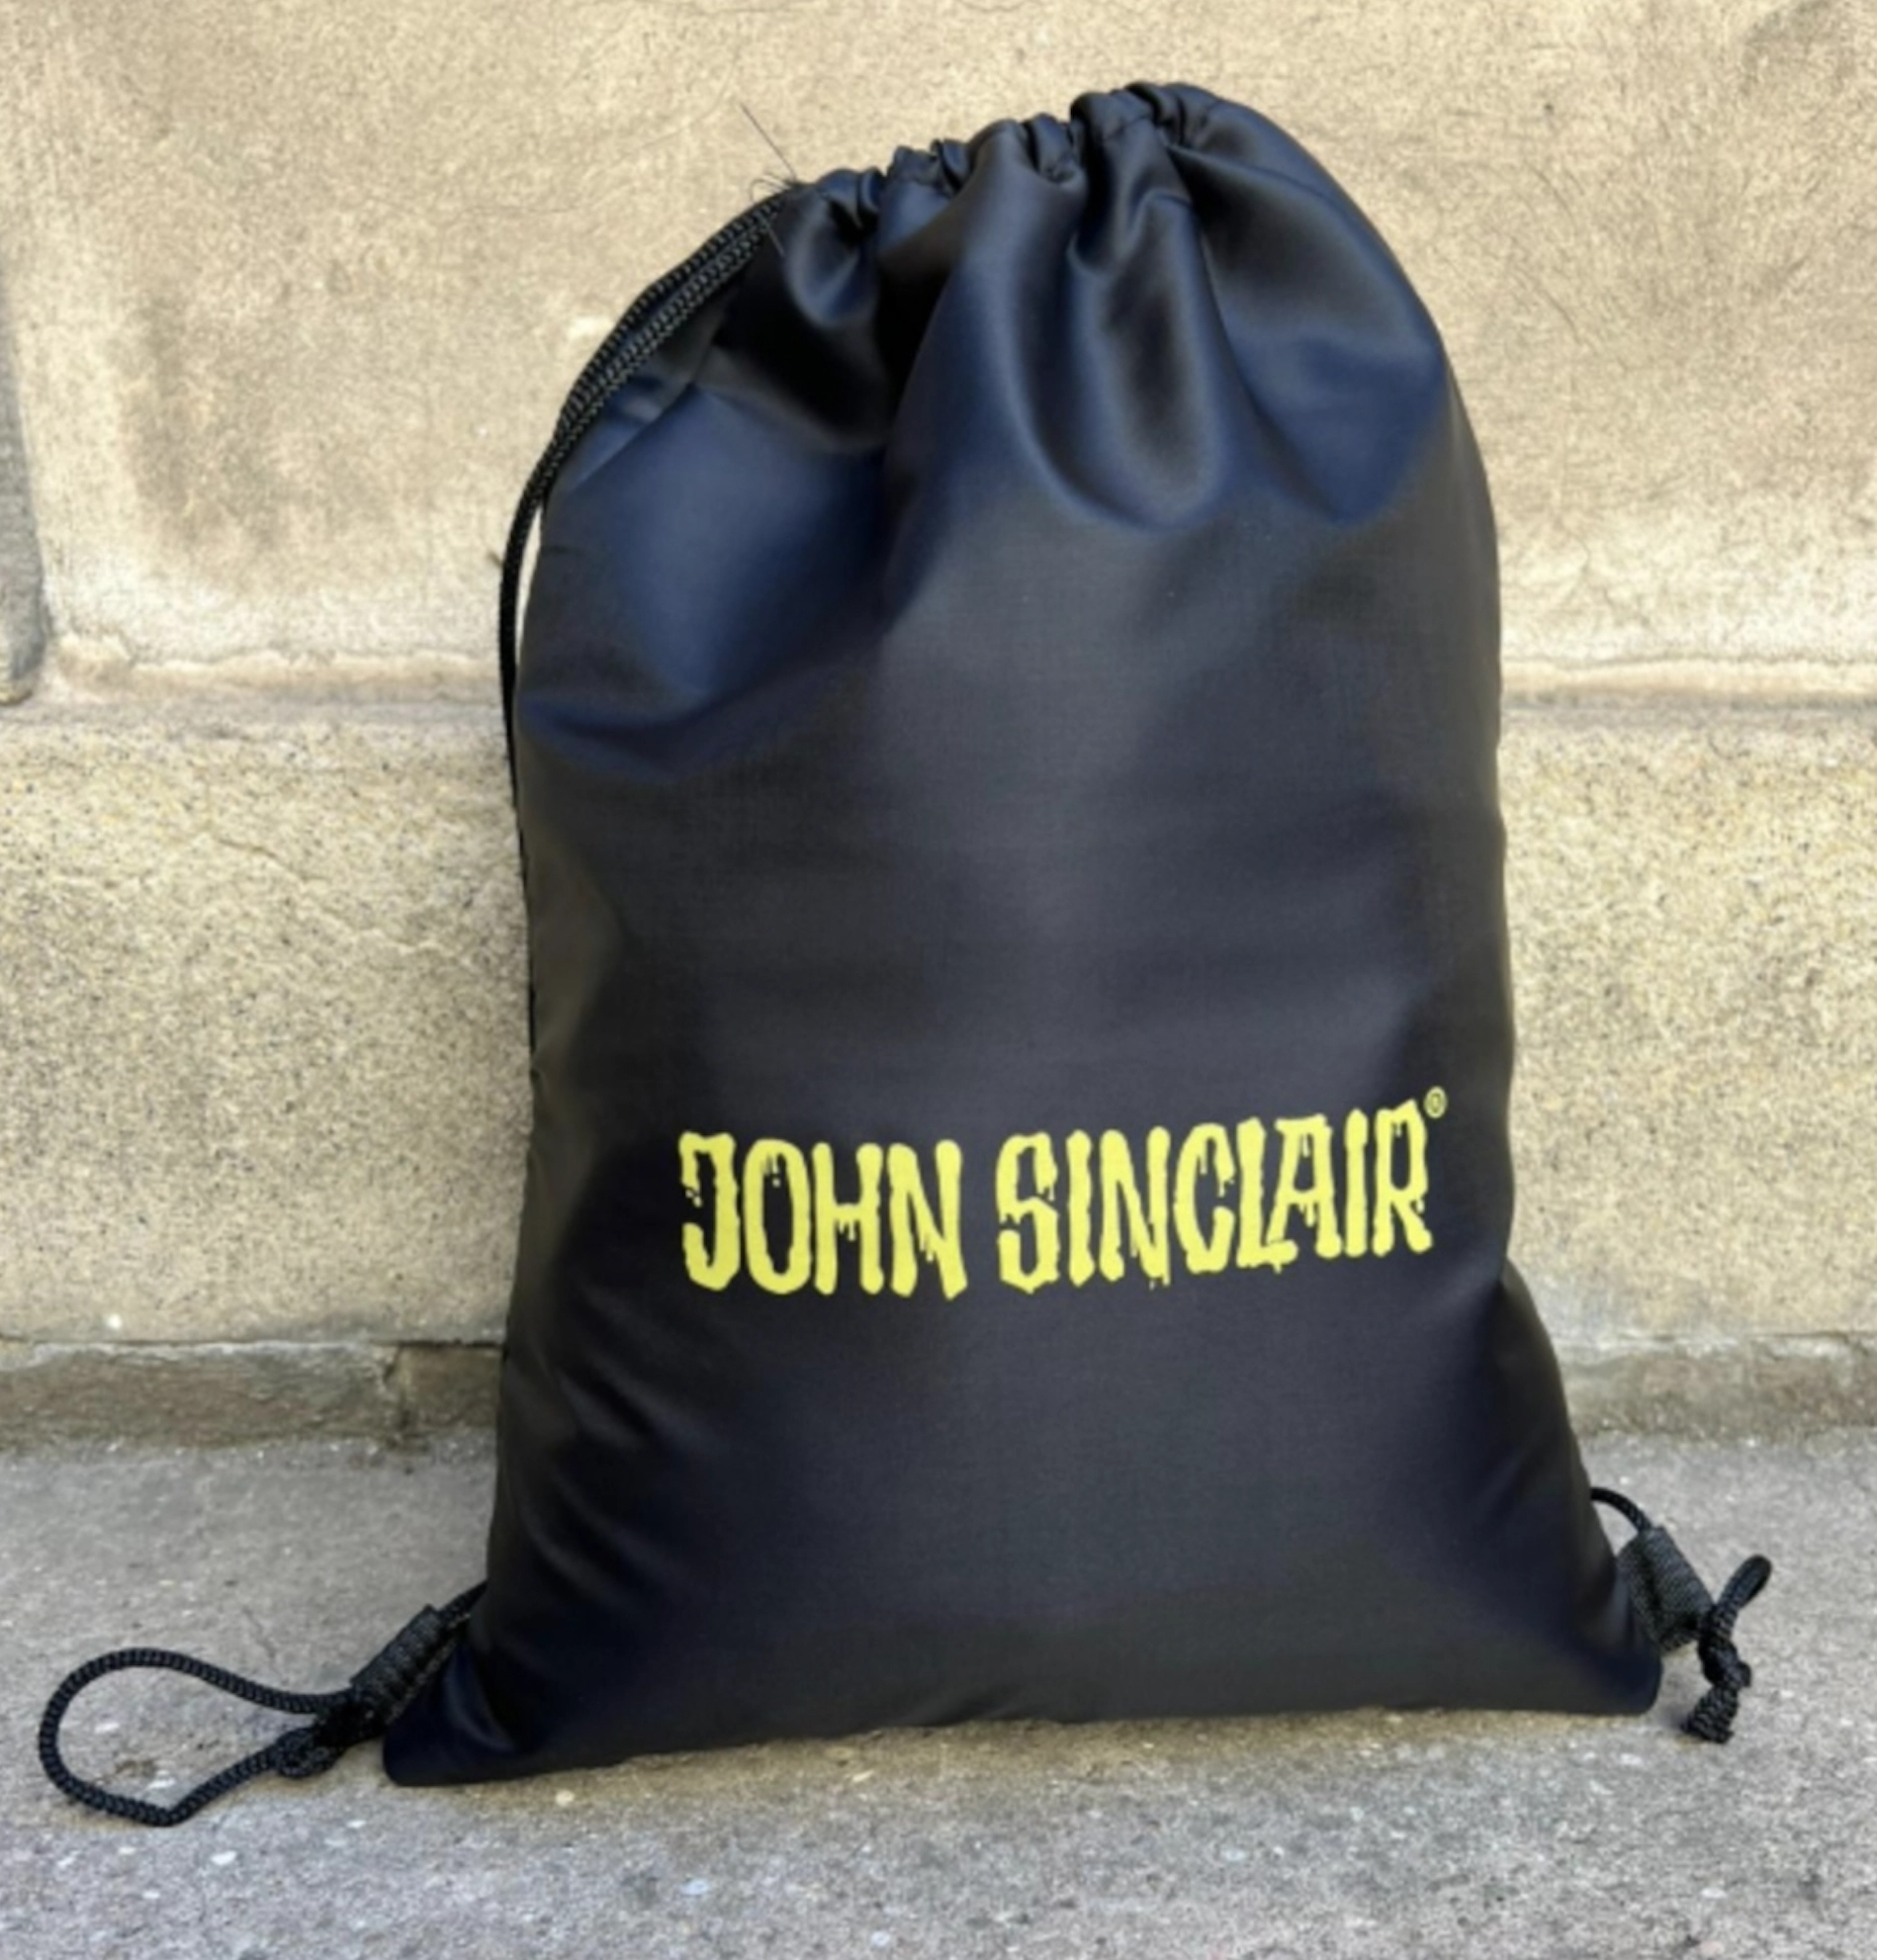 John Sinclair - Der unheimliche von Dartmoor  - CD SE13